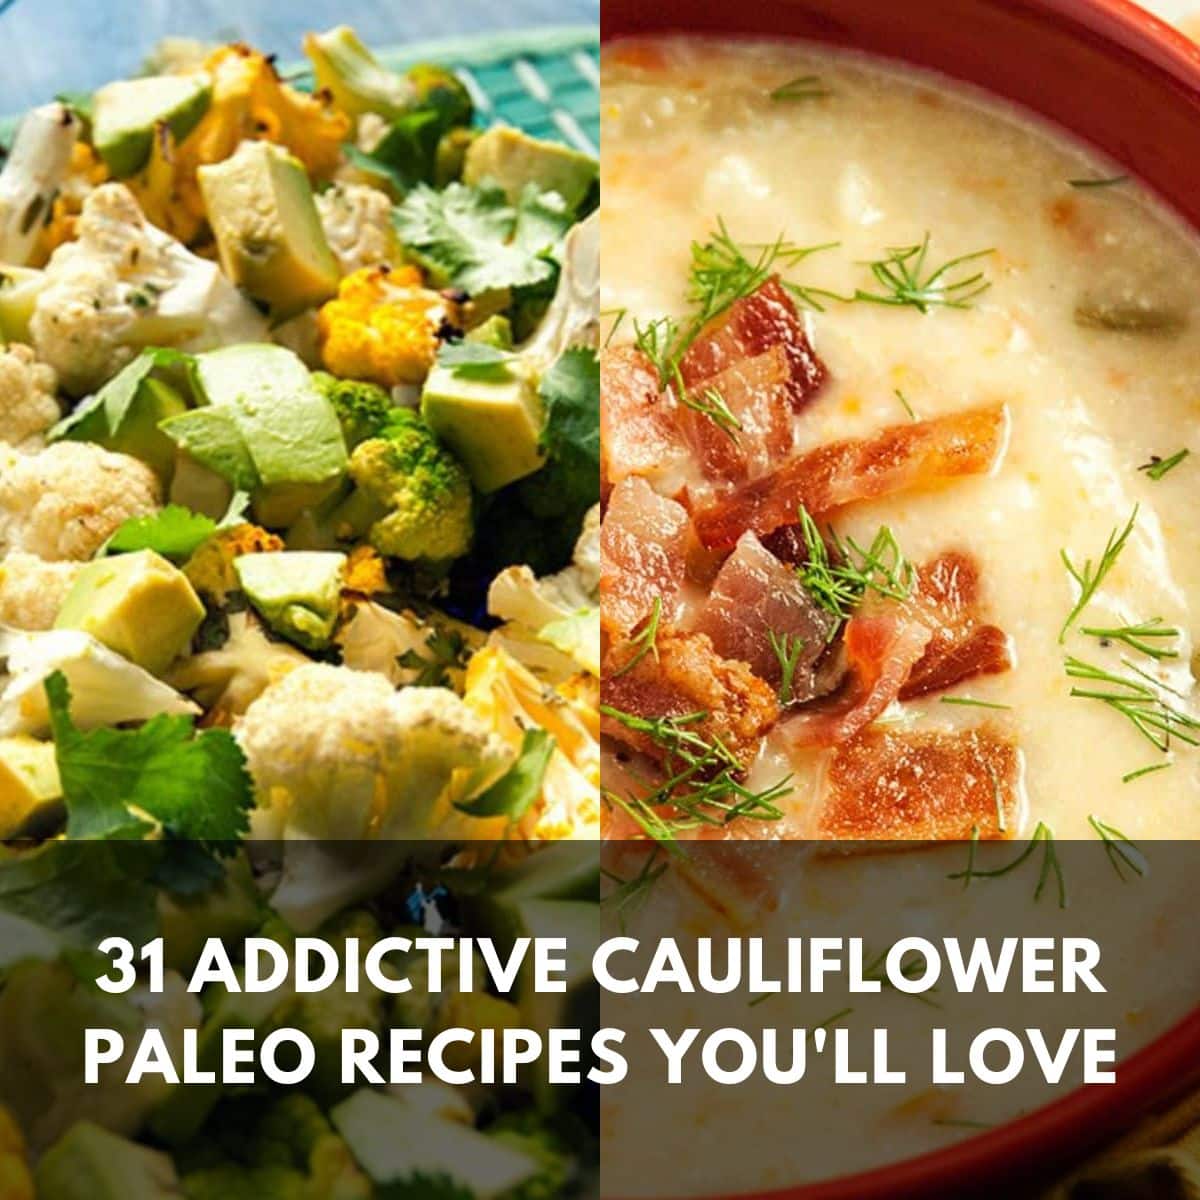 31 addictive cauliflower paleo recipes youll love main